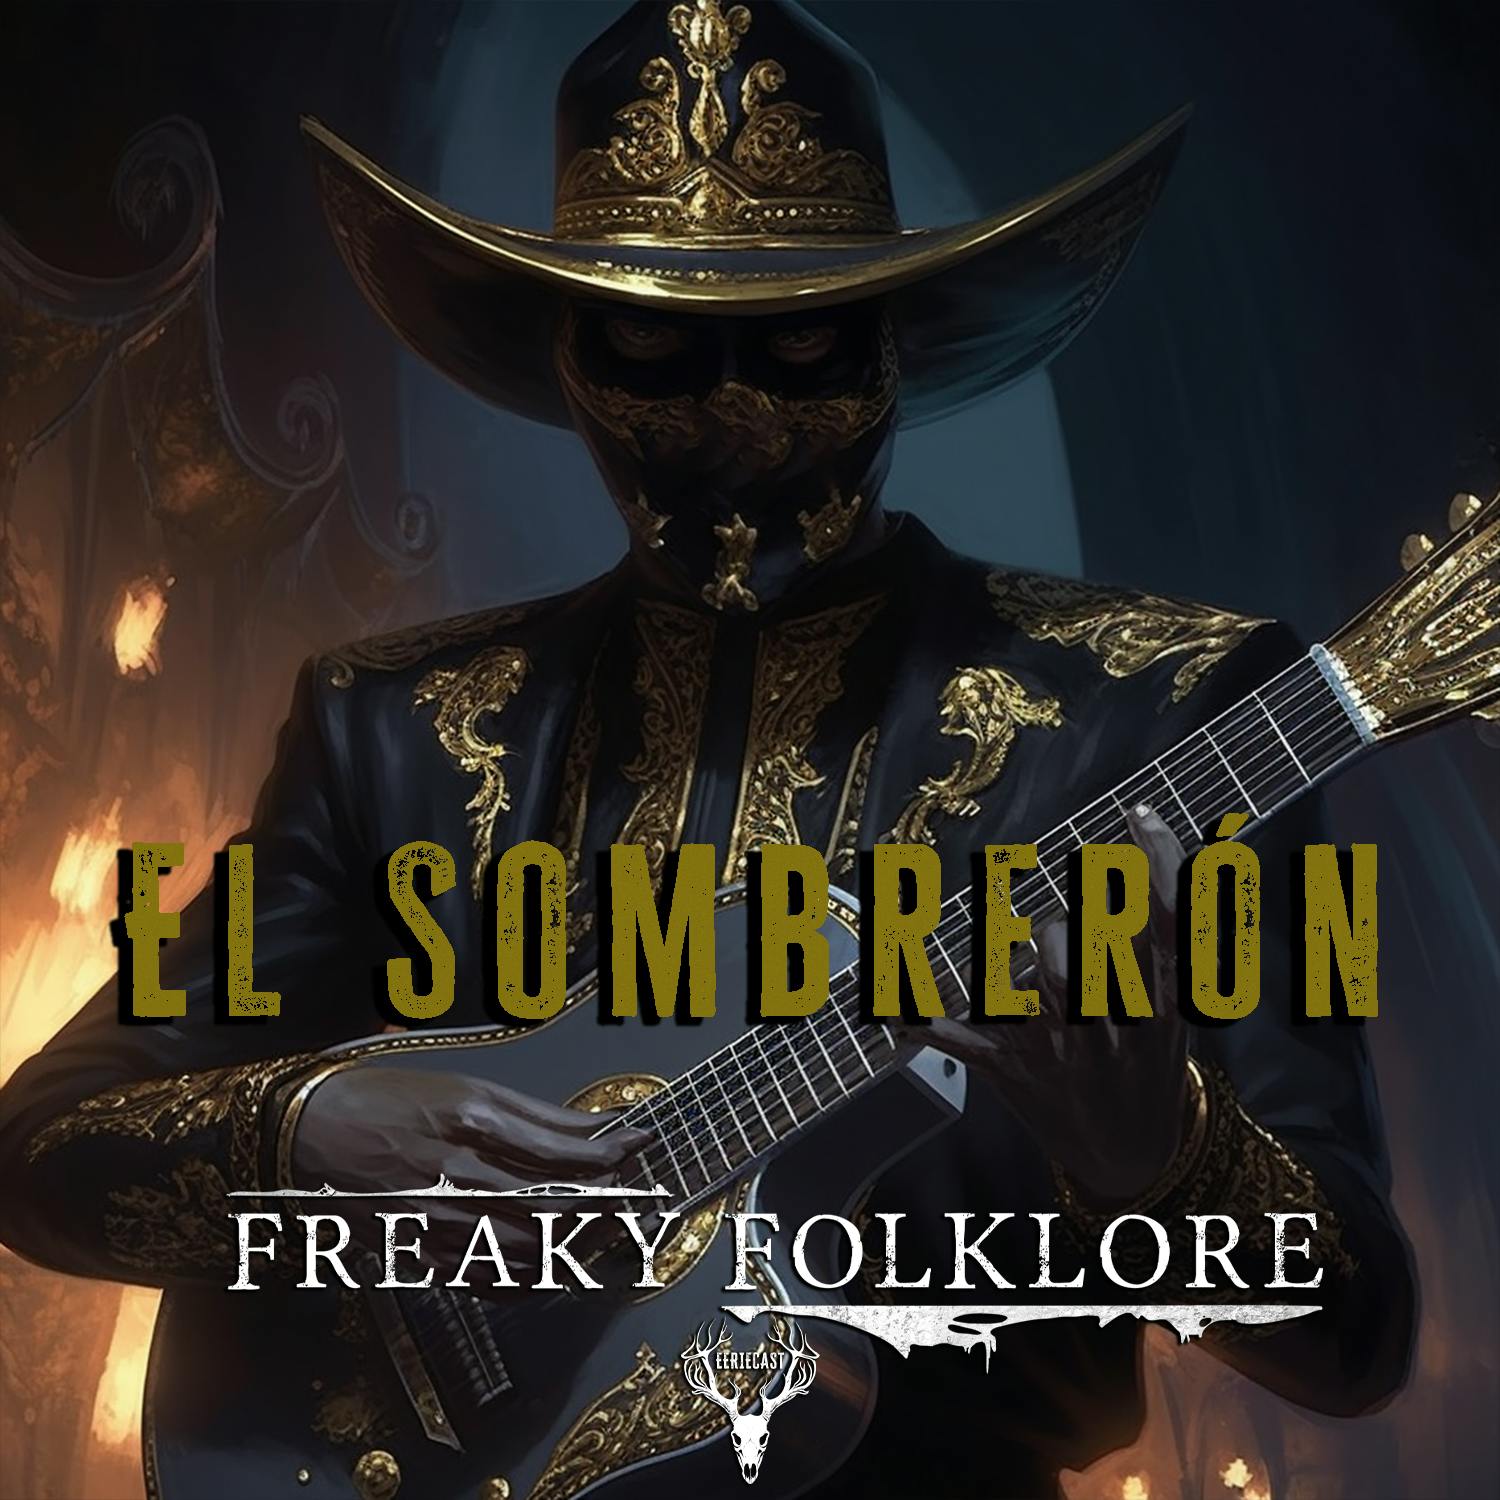 El Sombrerón - The Man in the Hat